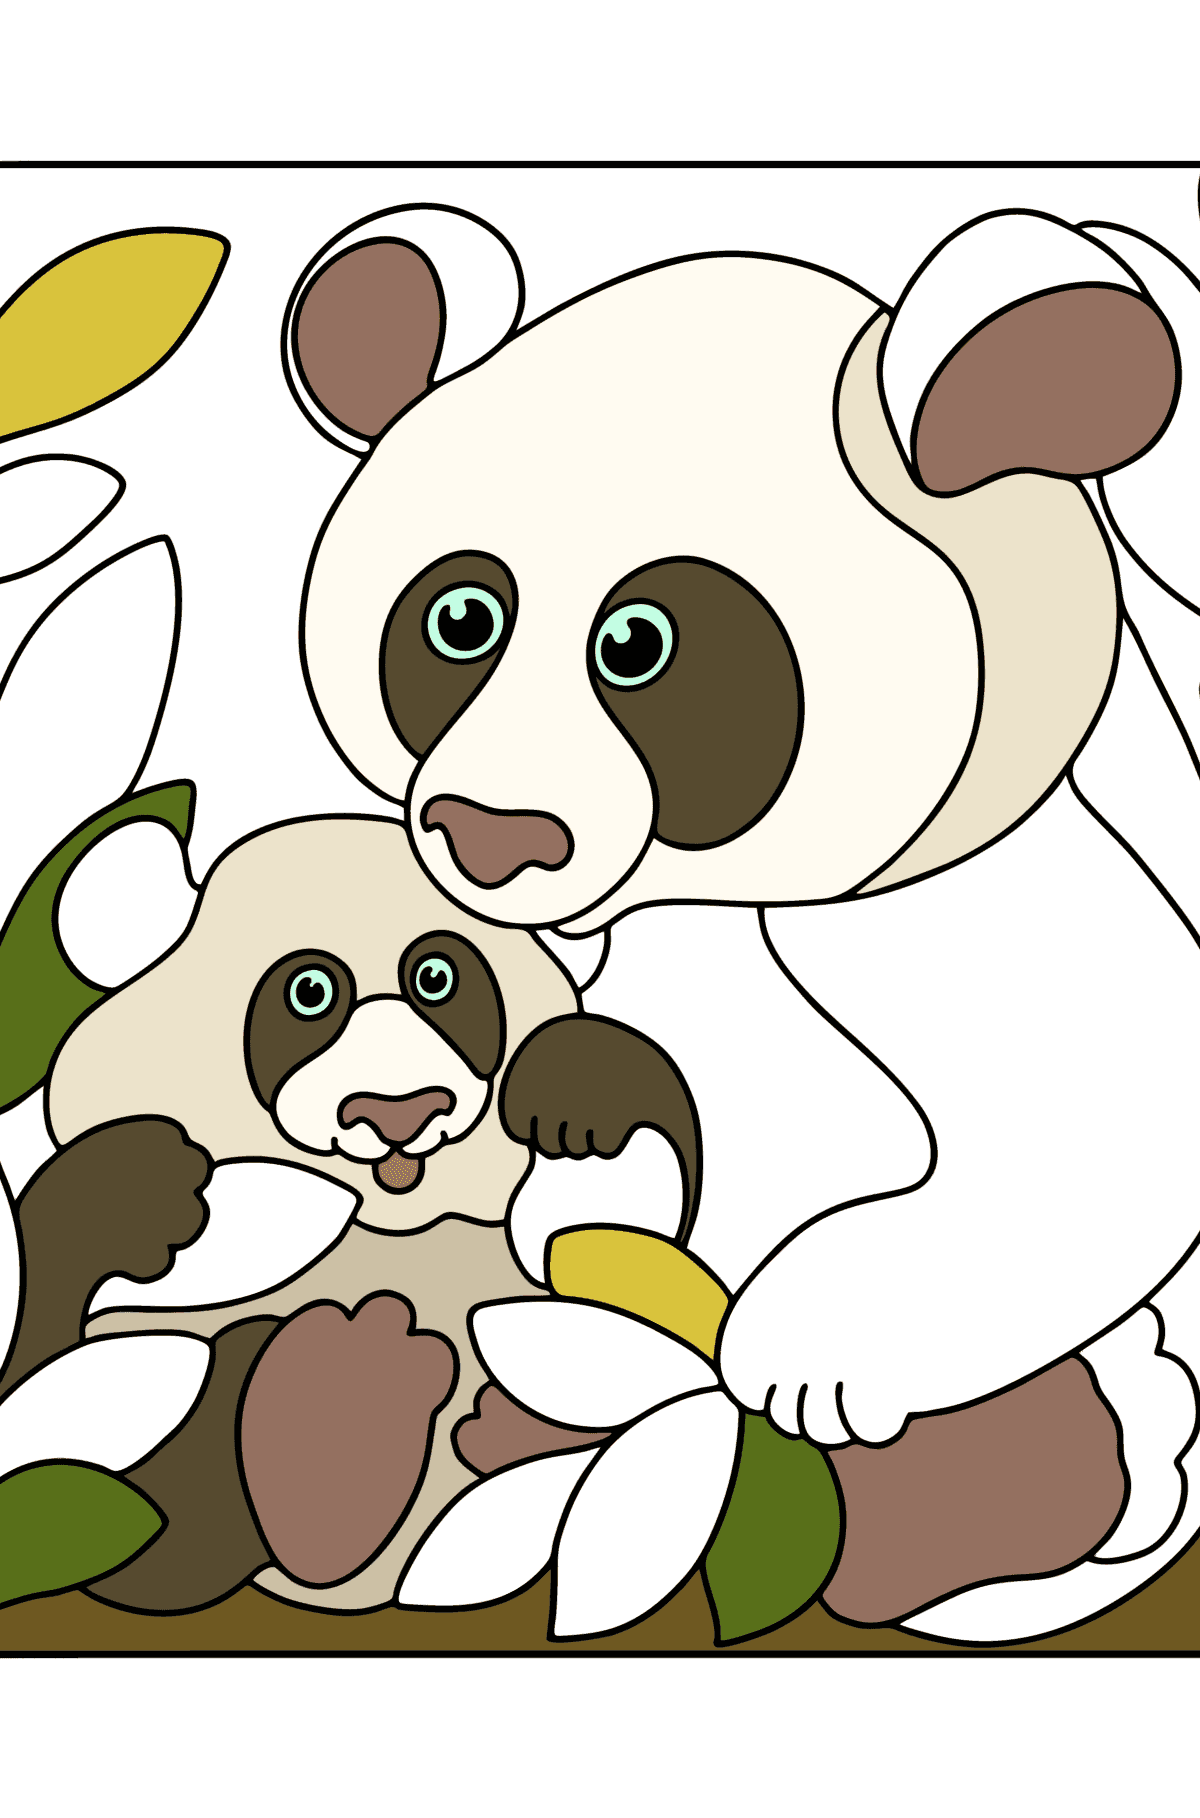 Boyama sayfası yavrusu olan dev panda - Boyamalar çocuklar için